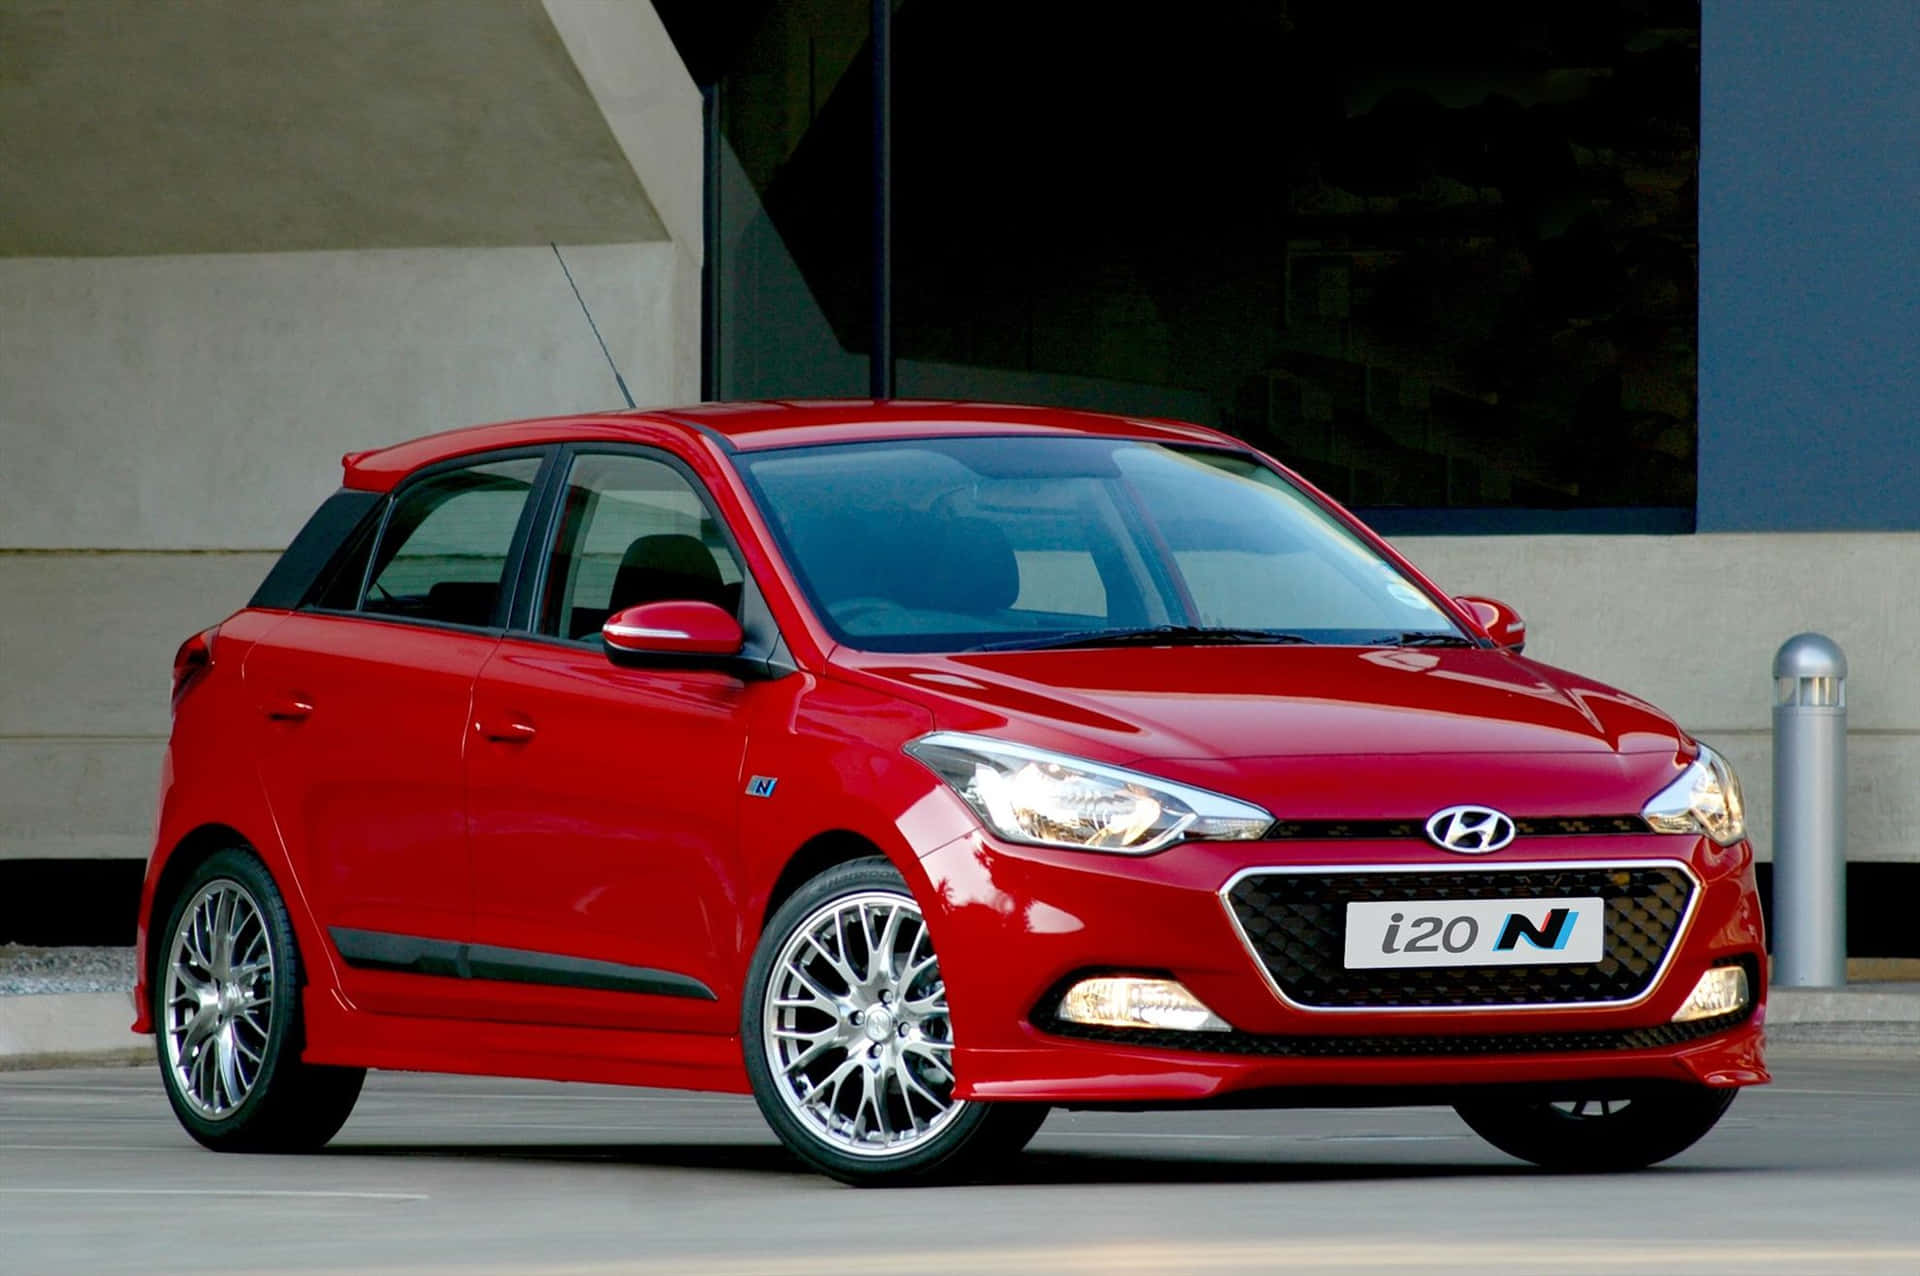 Hyundaibietet Eine Großartige Kombination Aus Stil Und Leistung.